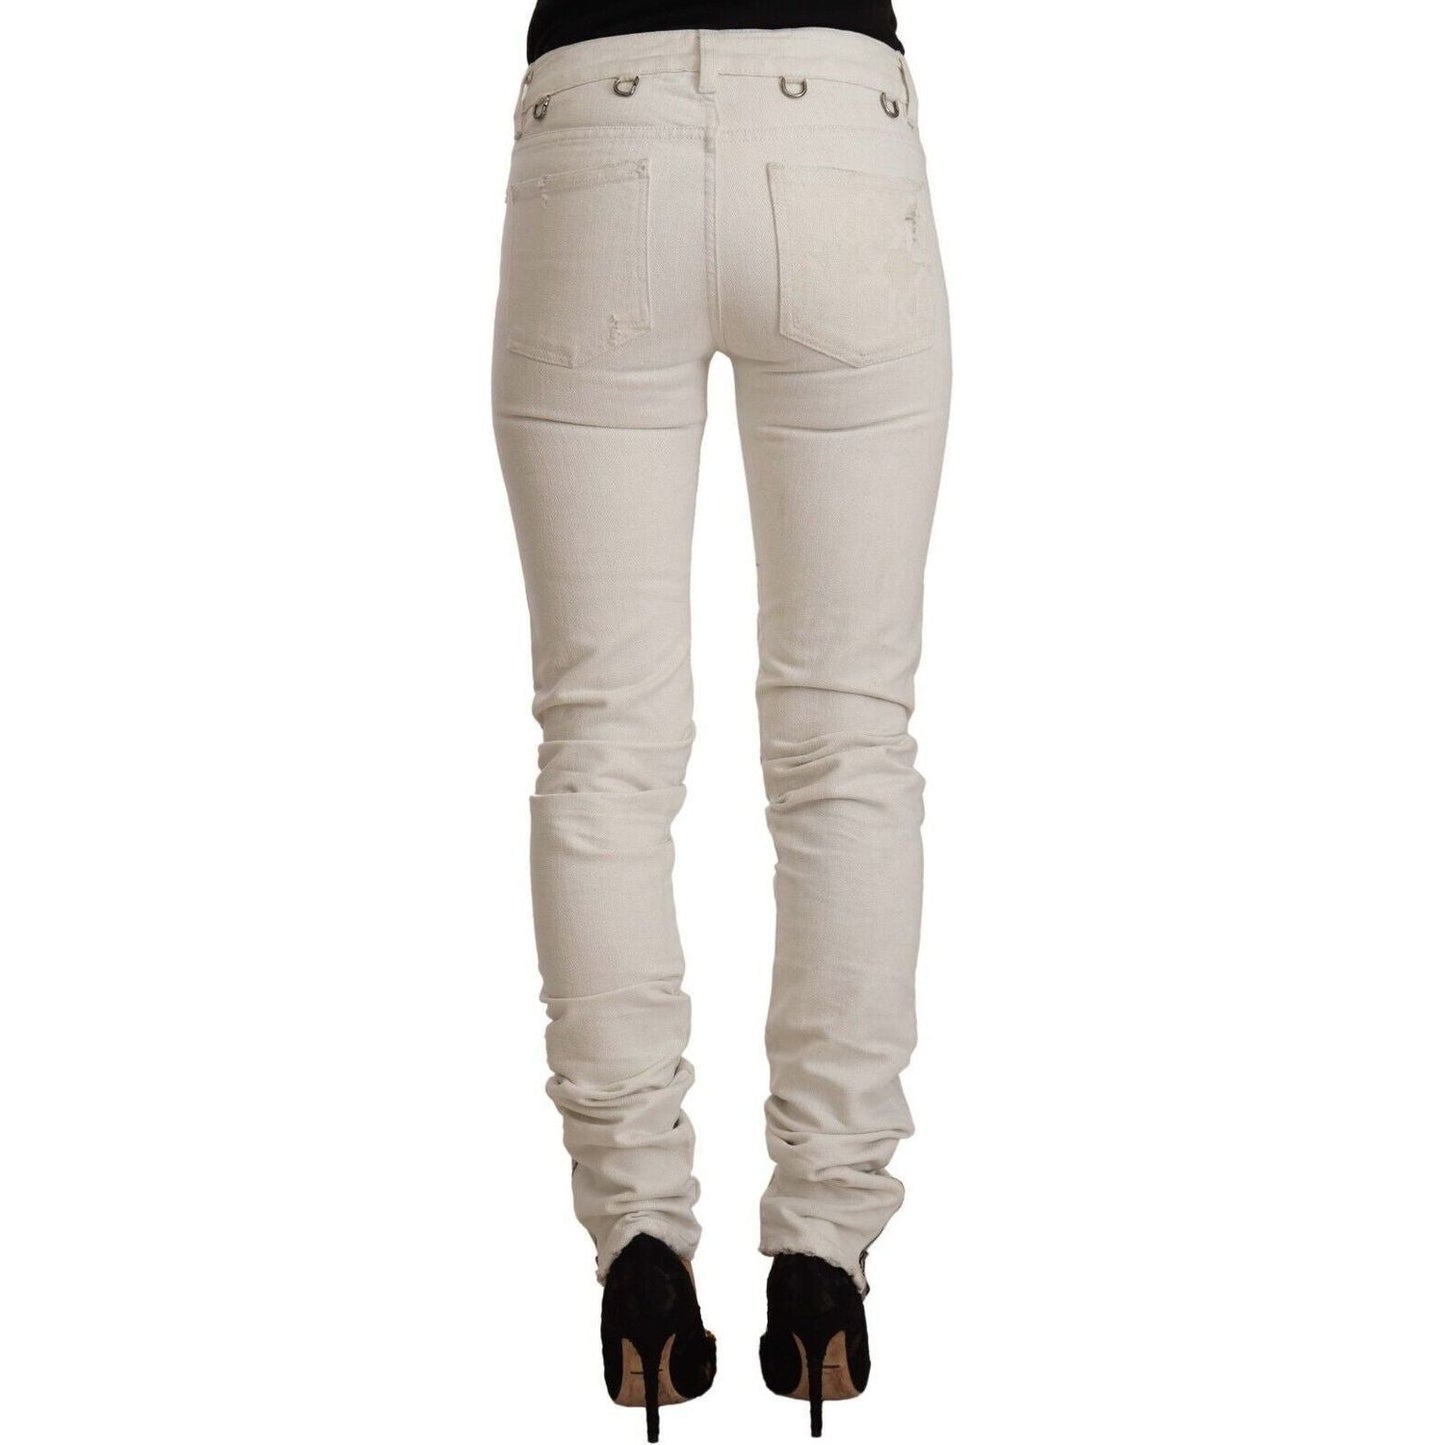 Karl Lagerfeld Chic White Mid-Waist Slim Fit Jeans white-mid-waist-cotton-denim-slim-fit-jeans